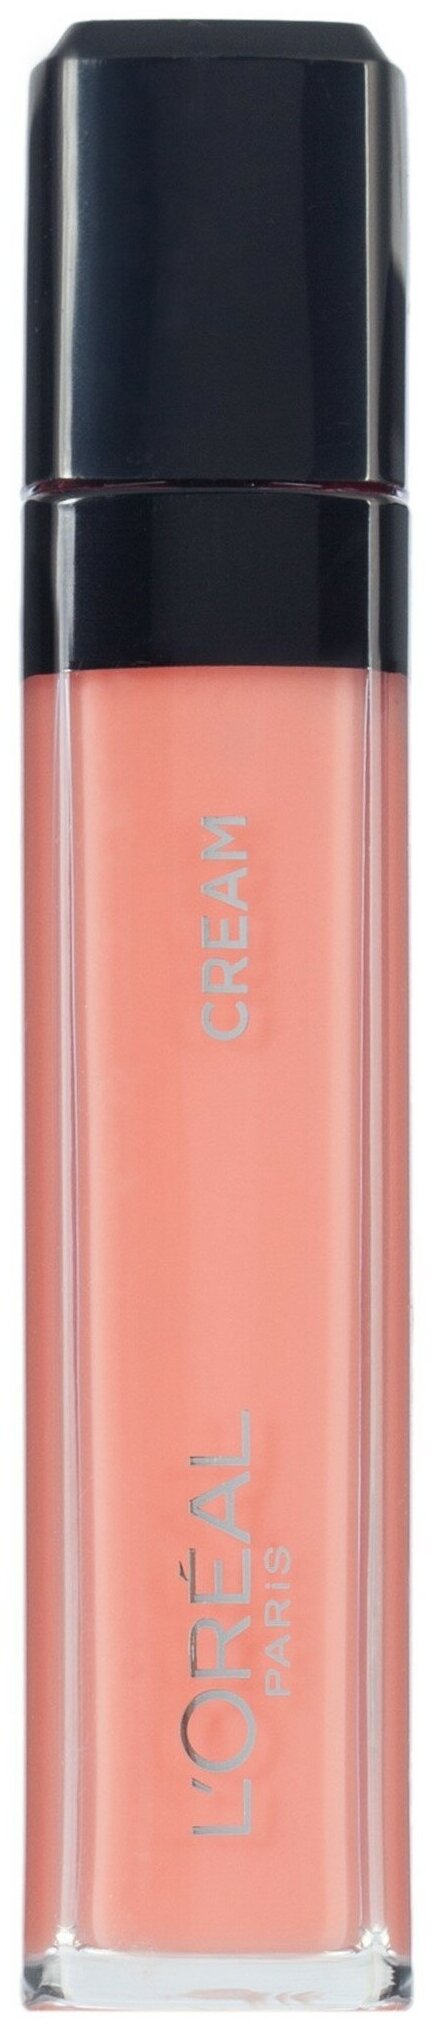 LOreal Paris Infaillible Mega gloss Безупречный блеск для губ кремовый, 101, Верх совершенства